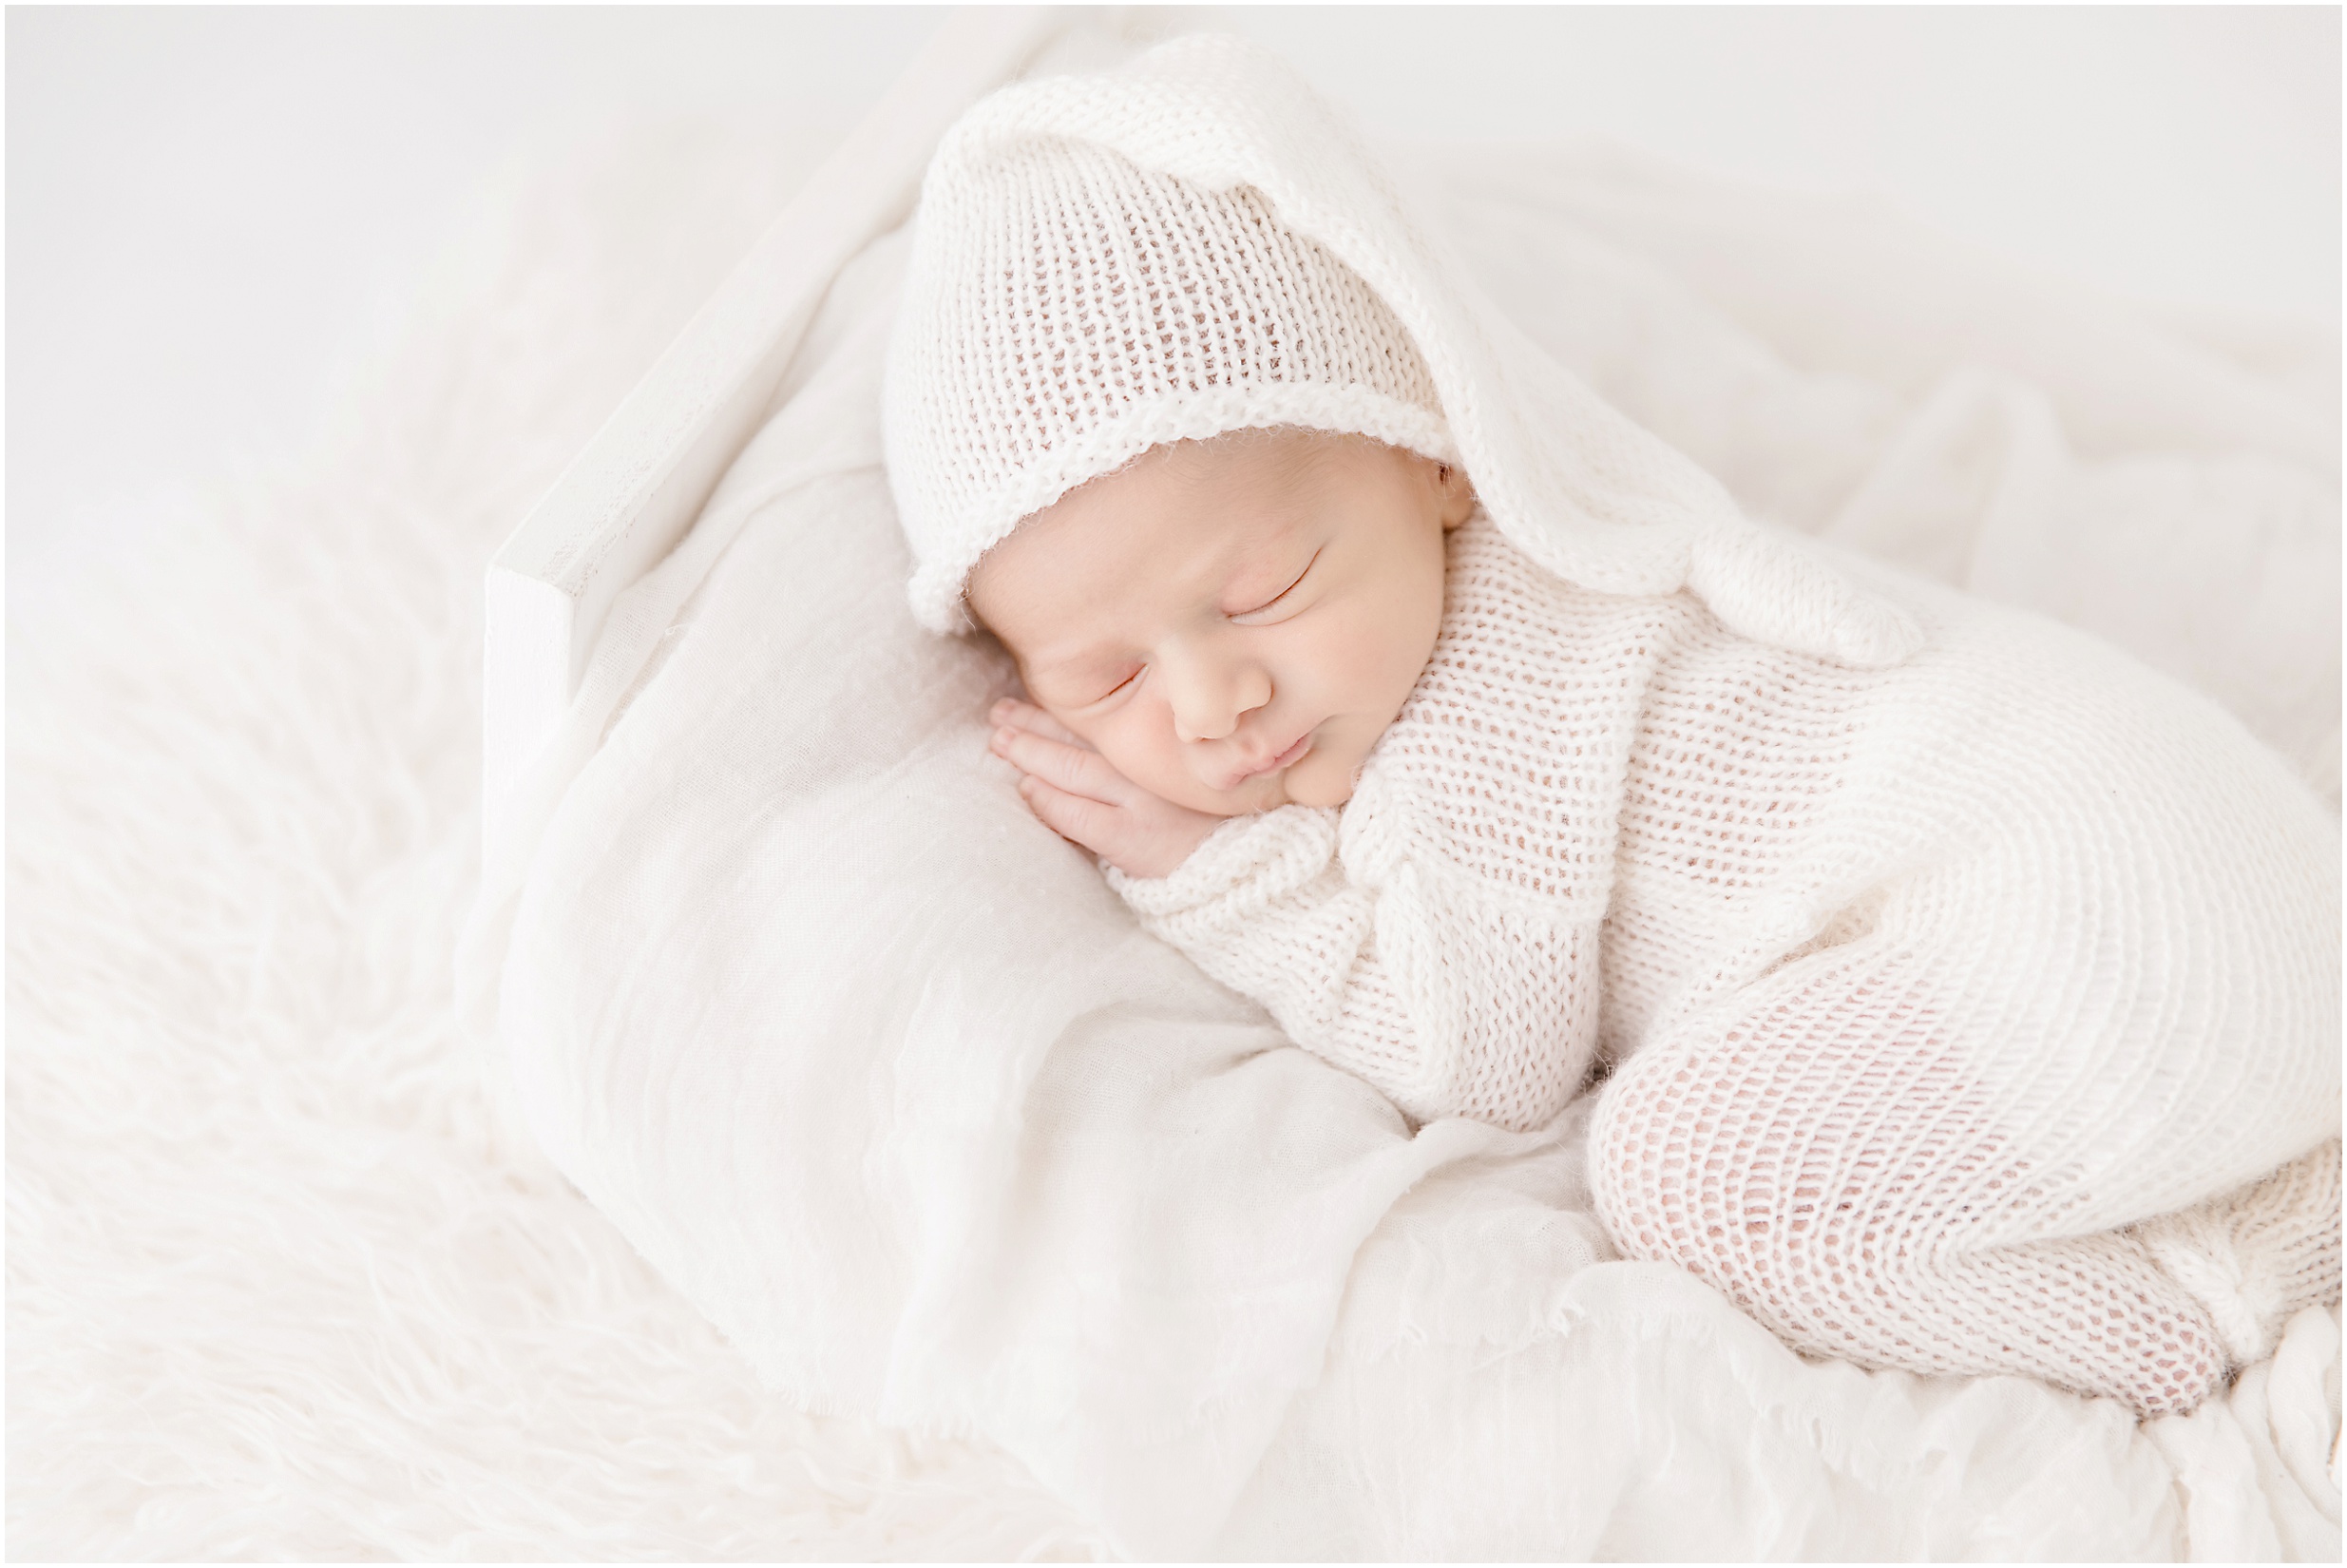 newborn photos, edmonton newborn photographer, nc photography, yeg photographer, edmonton maternity photographer